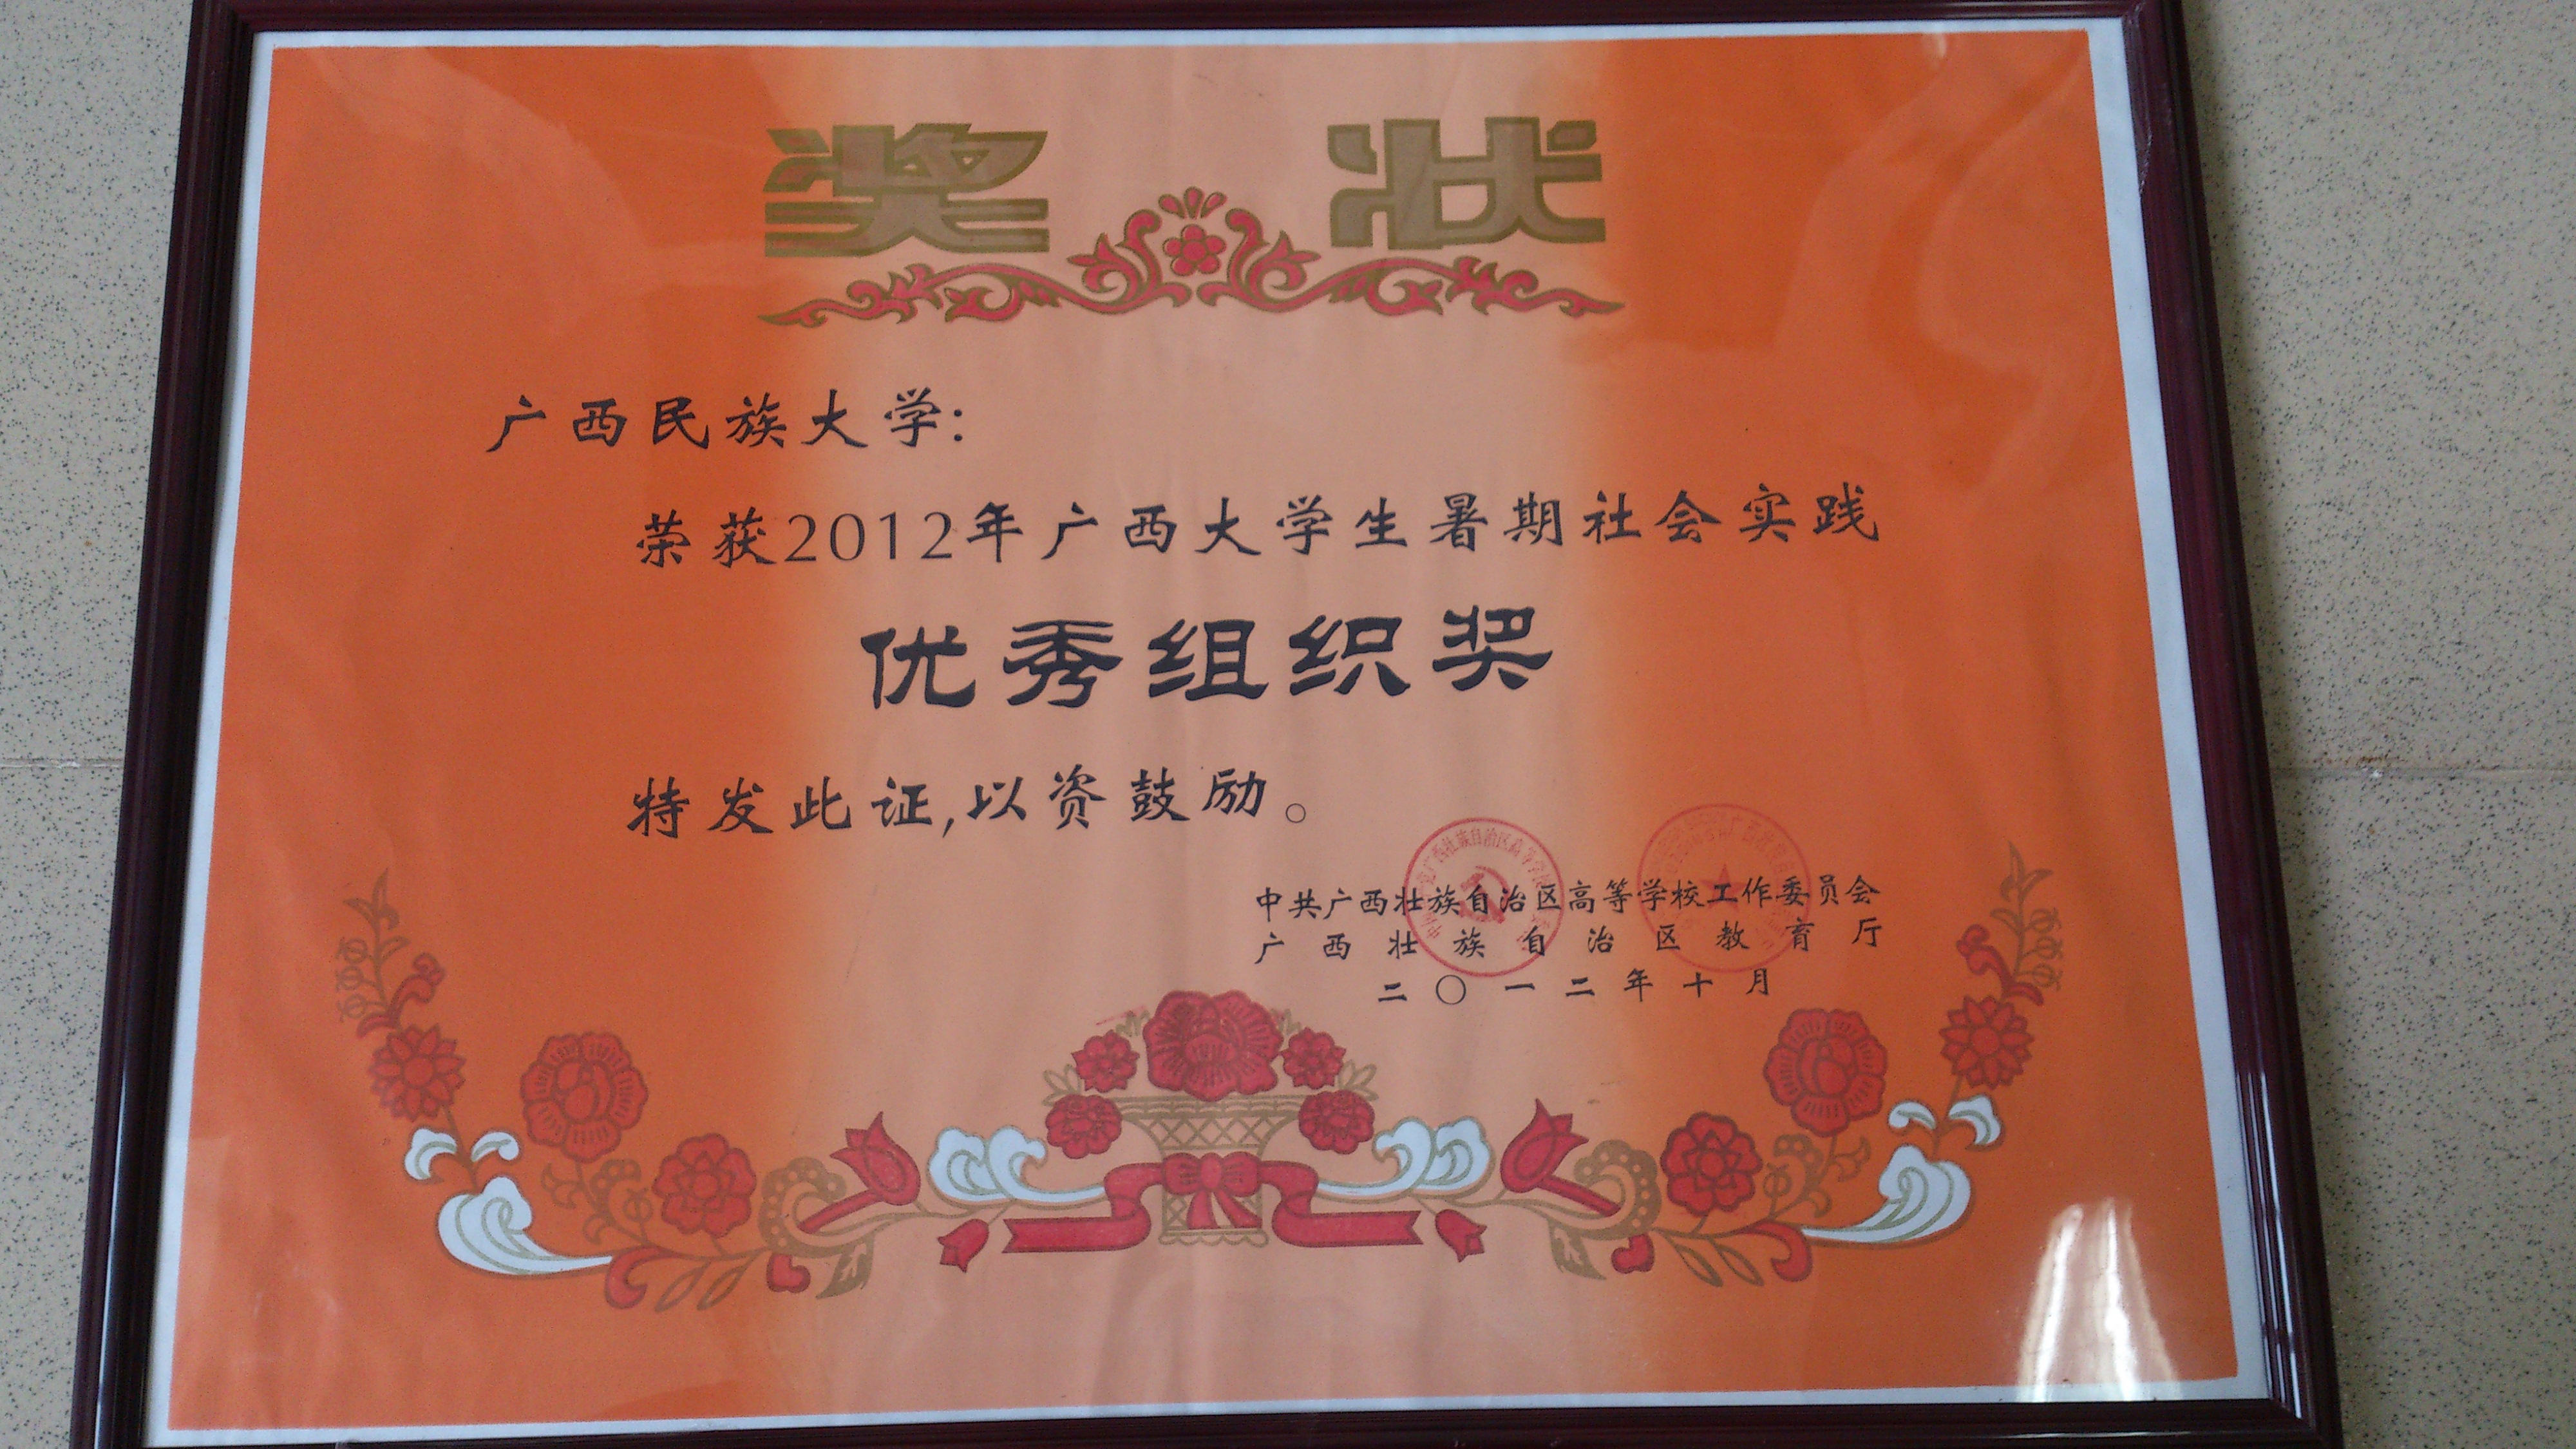 2012年  暑期社会实践 自治区级集体奖 2